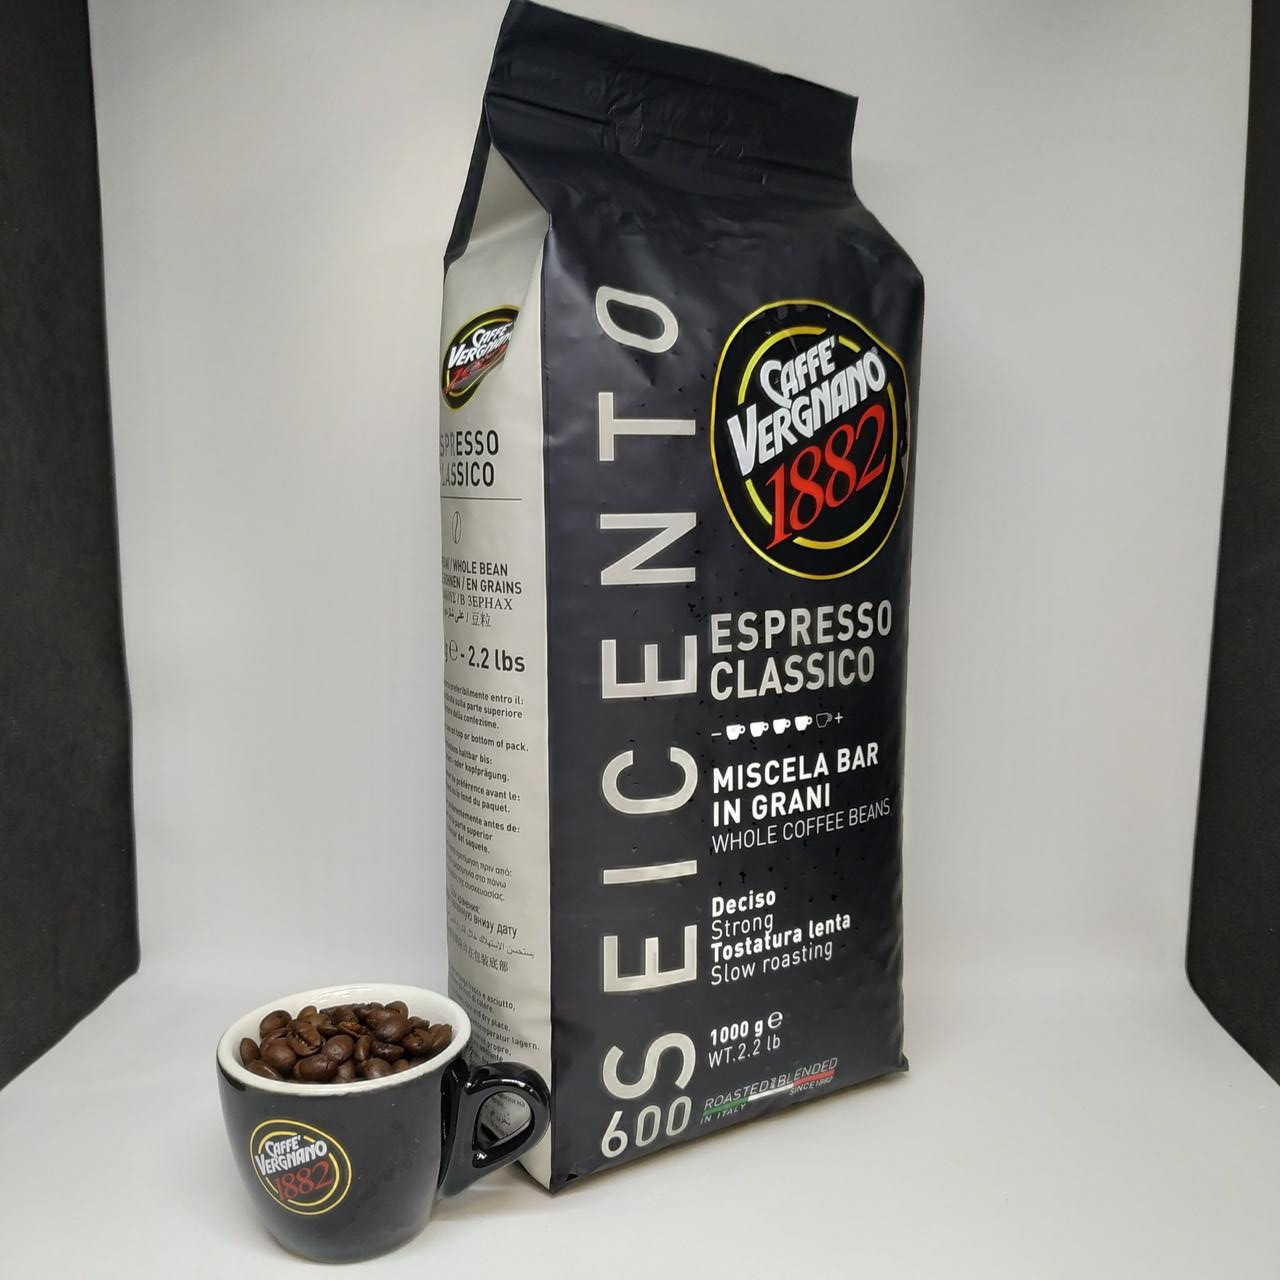 Caffe Vergnano Espresso Classico 600 - Кава в зернах